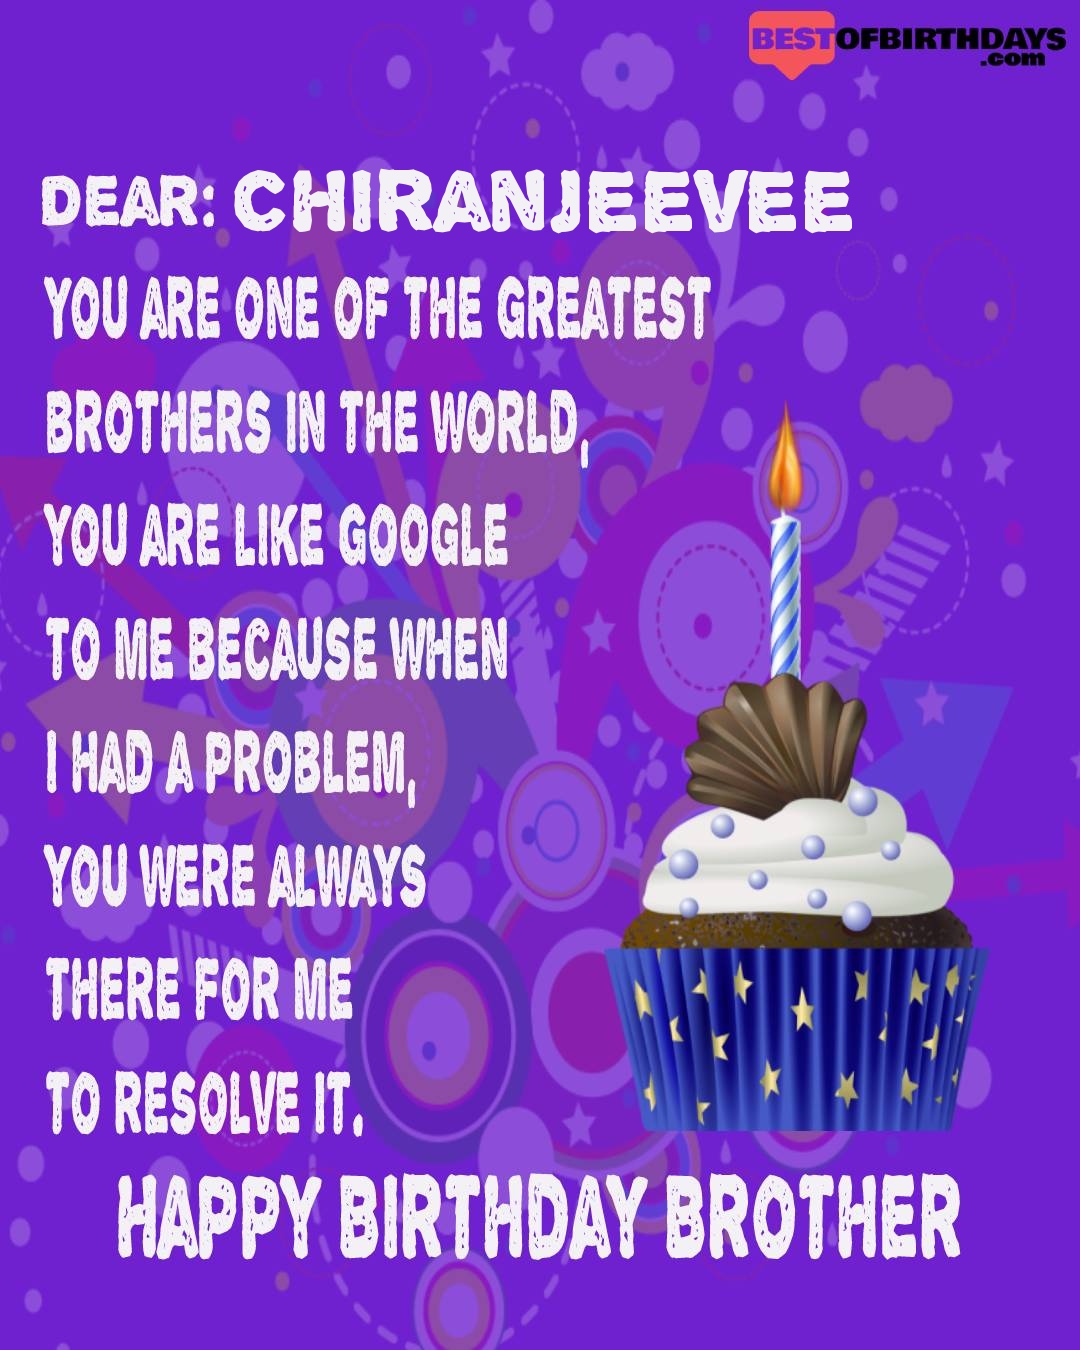 Happy birthday chiranjeevee bhai brother bro